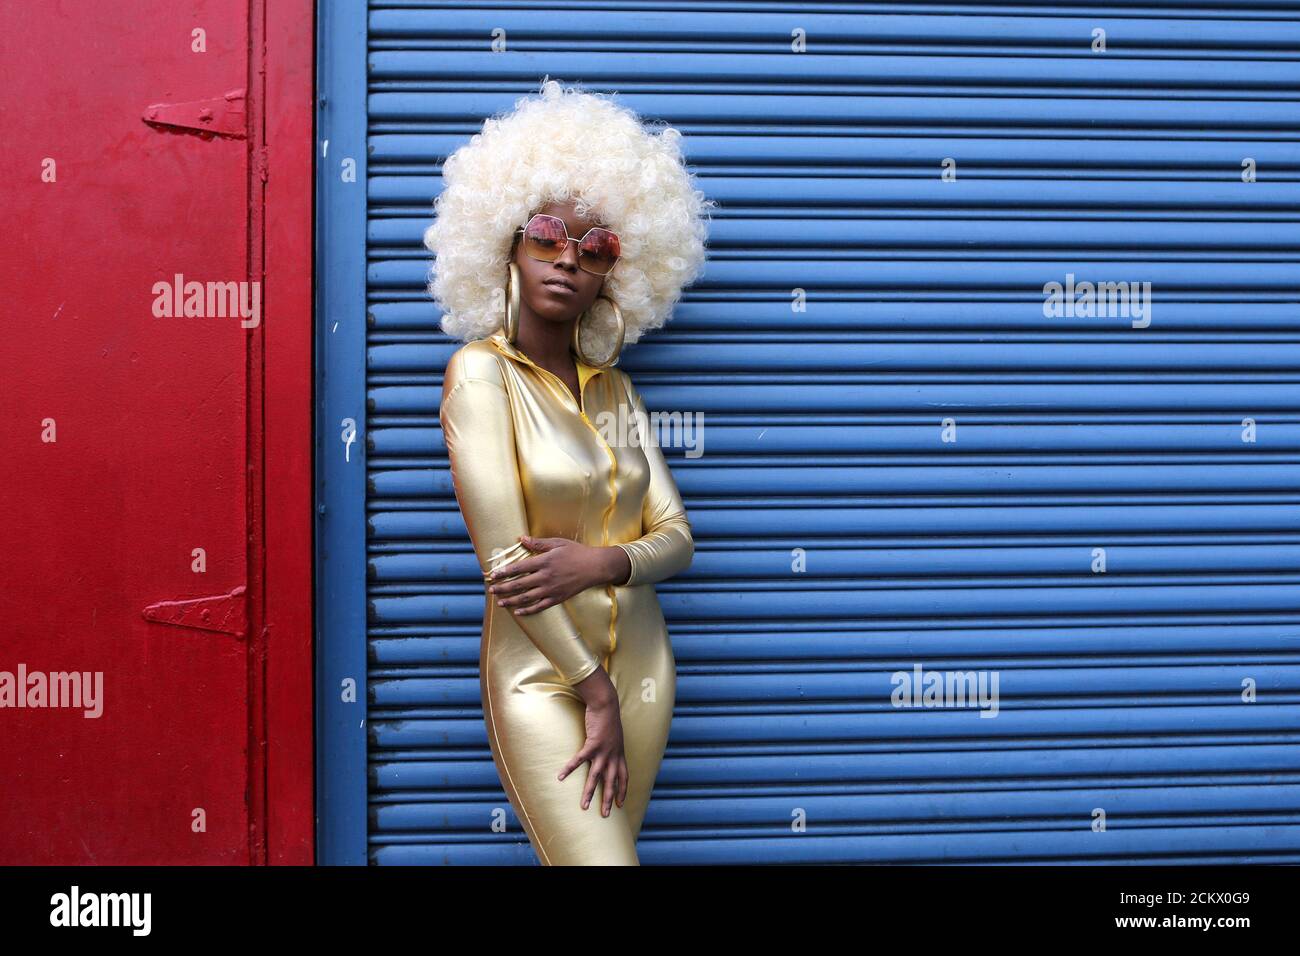 Modelo y blogger Fennella como Whoa posan para una foto durante la Semana de la Moda de Nueva York en el barrio de Manhattan de la Ciudad de Nueva York, EE.UU., 9 de septiembre de 2017. REUTERS/Joe Penney IMÁGENES TPX DEL DÍA Foto de stock